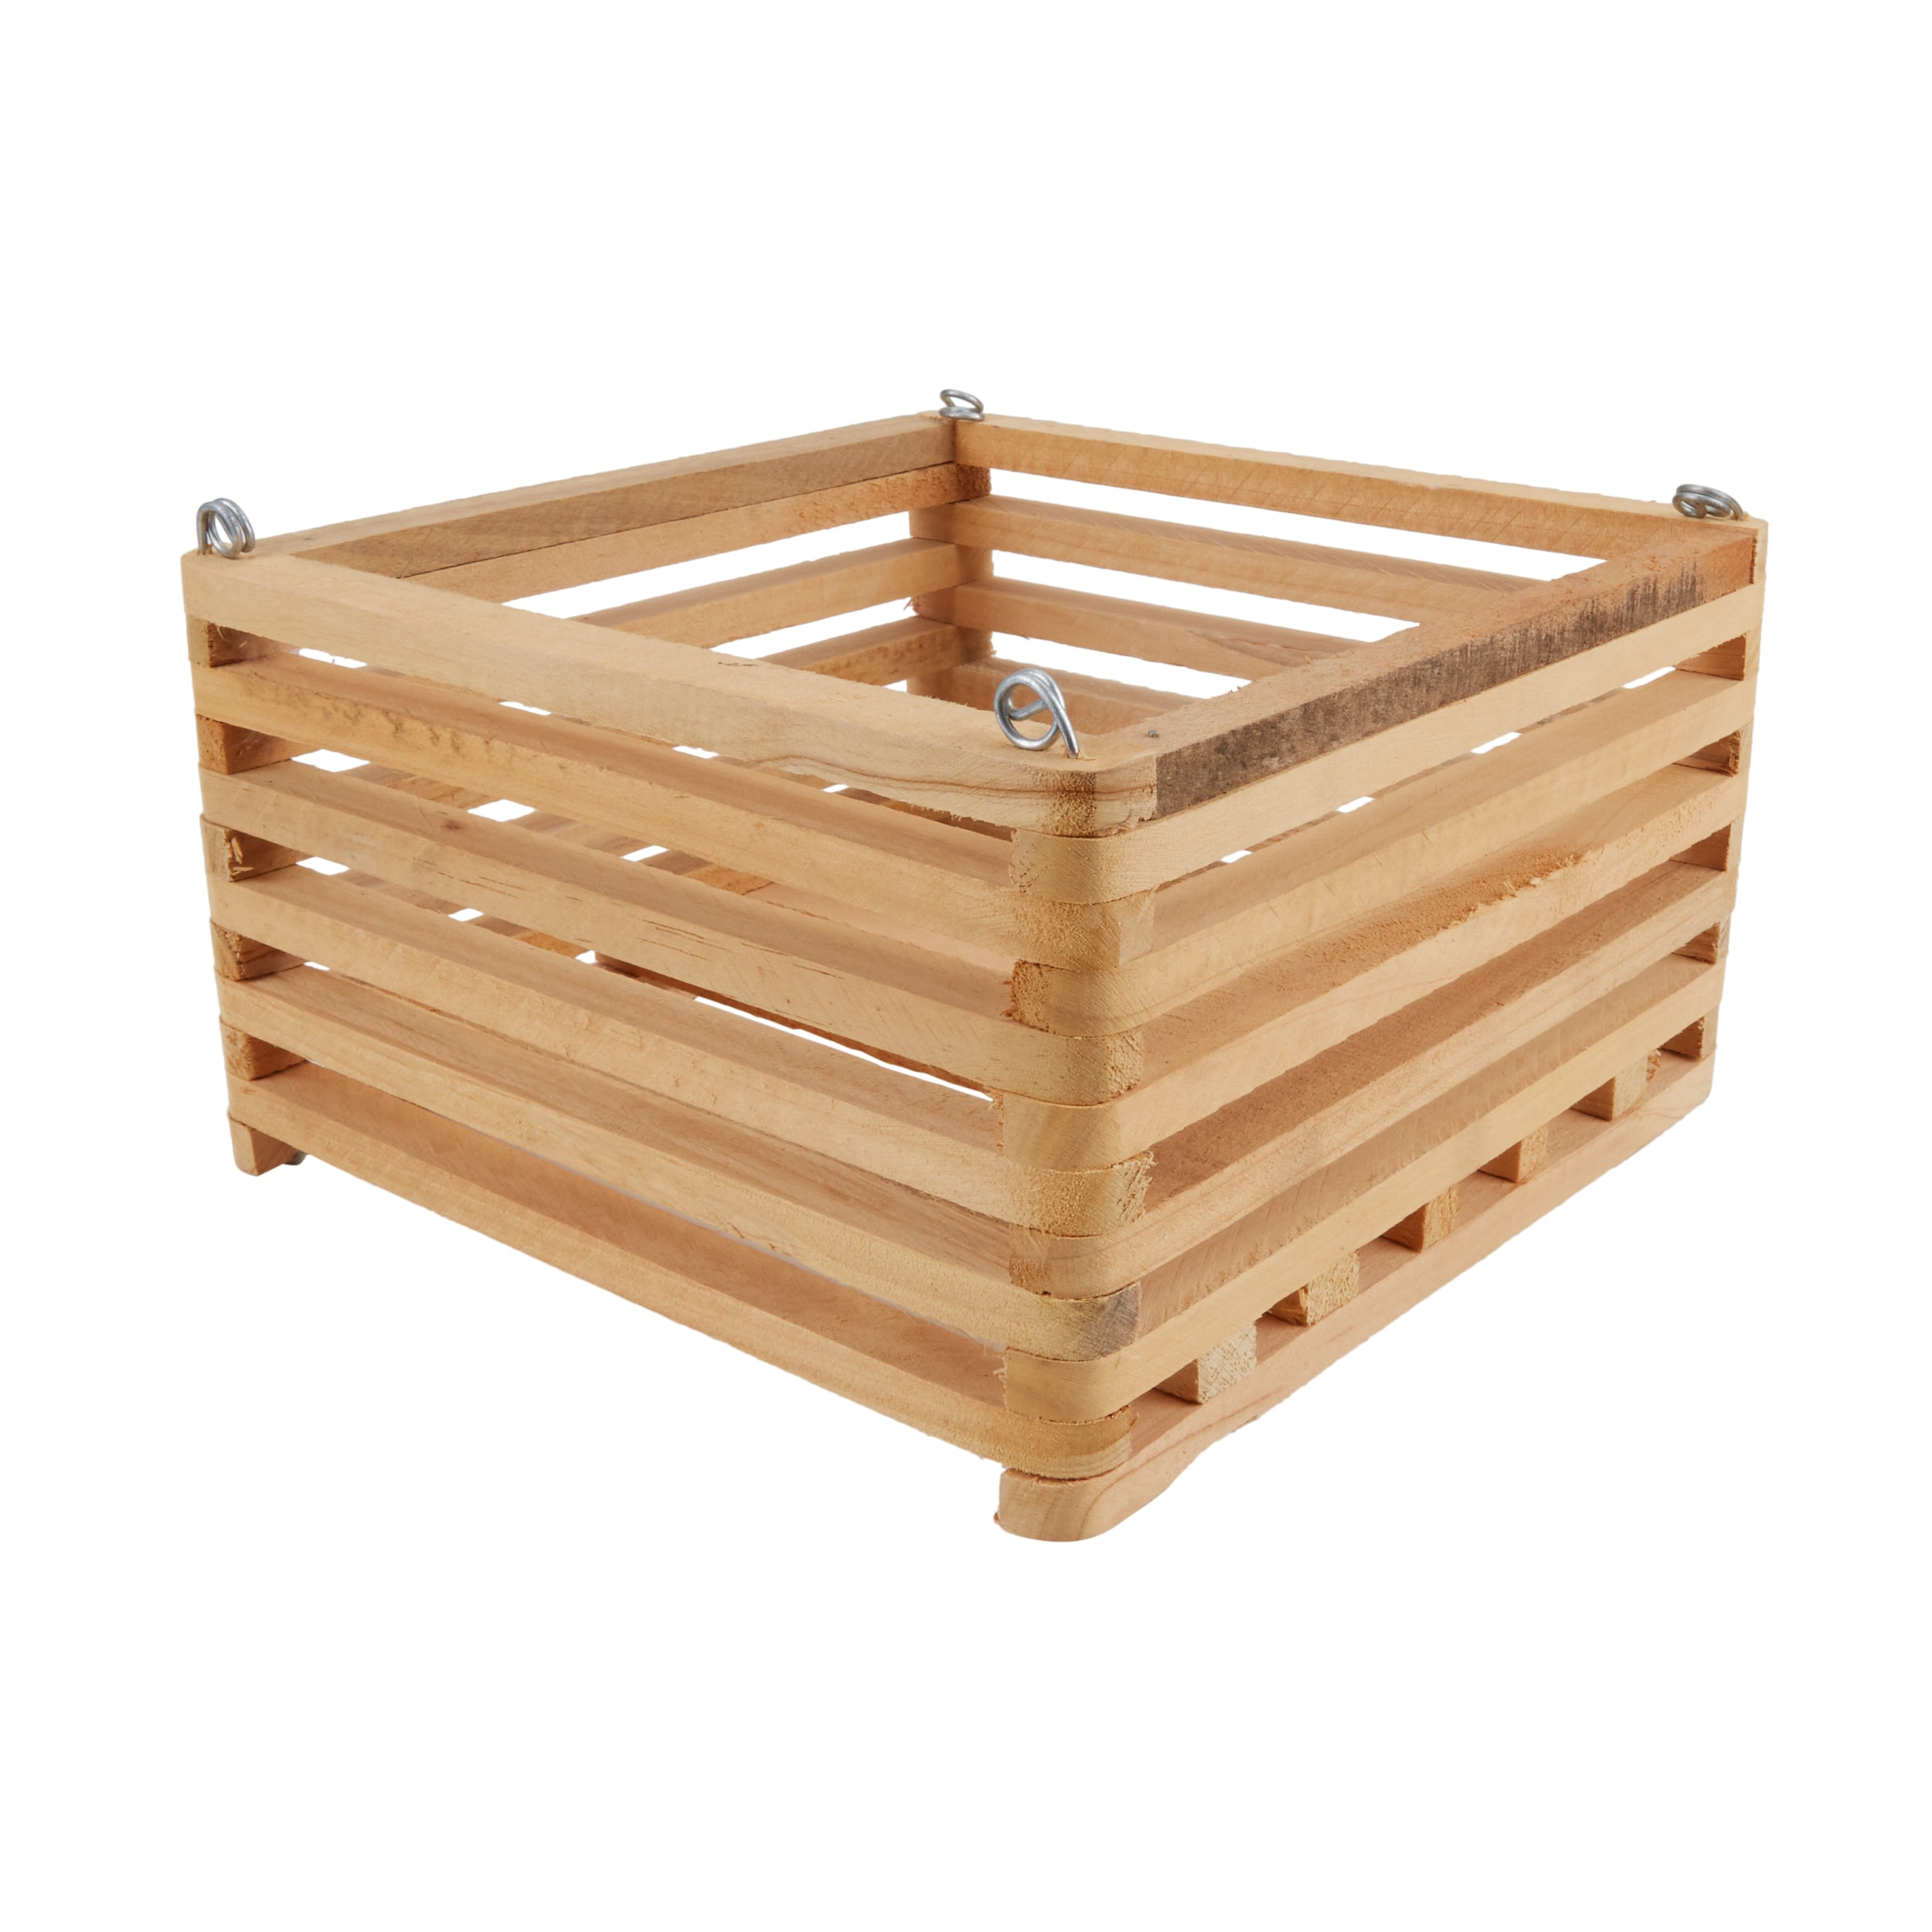 Wood Designs Basket - Set of (10)